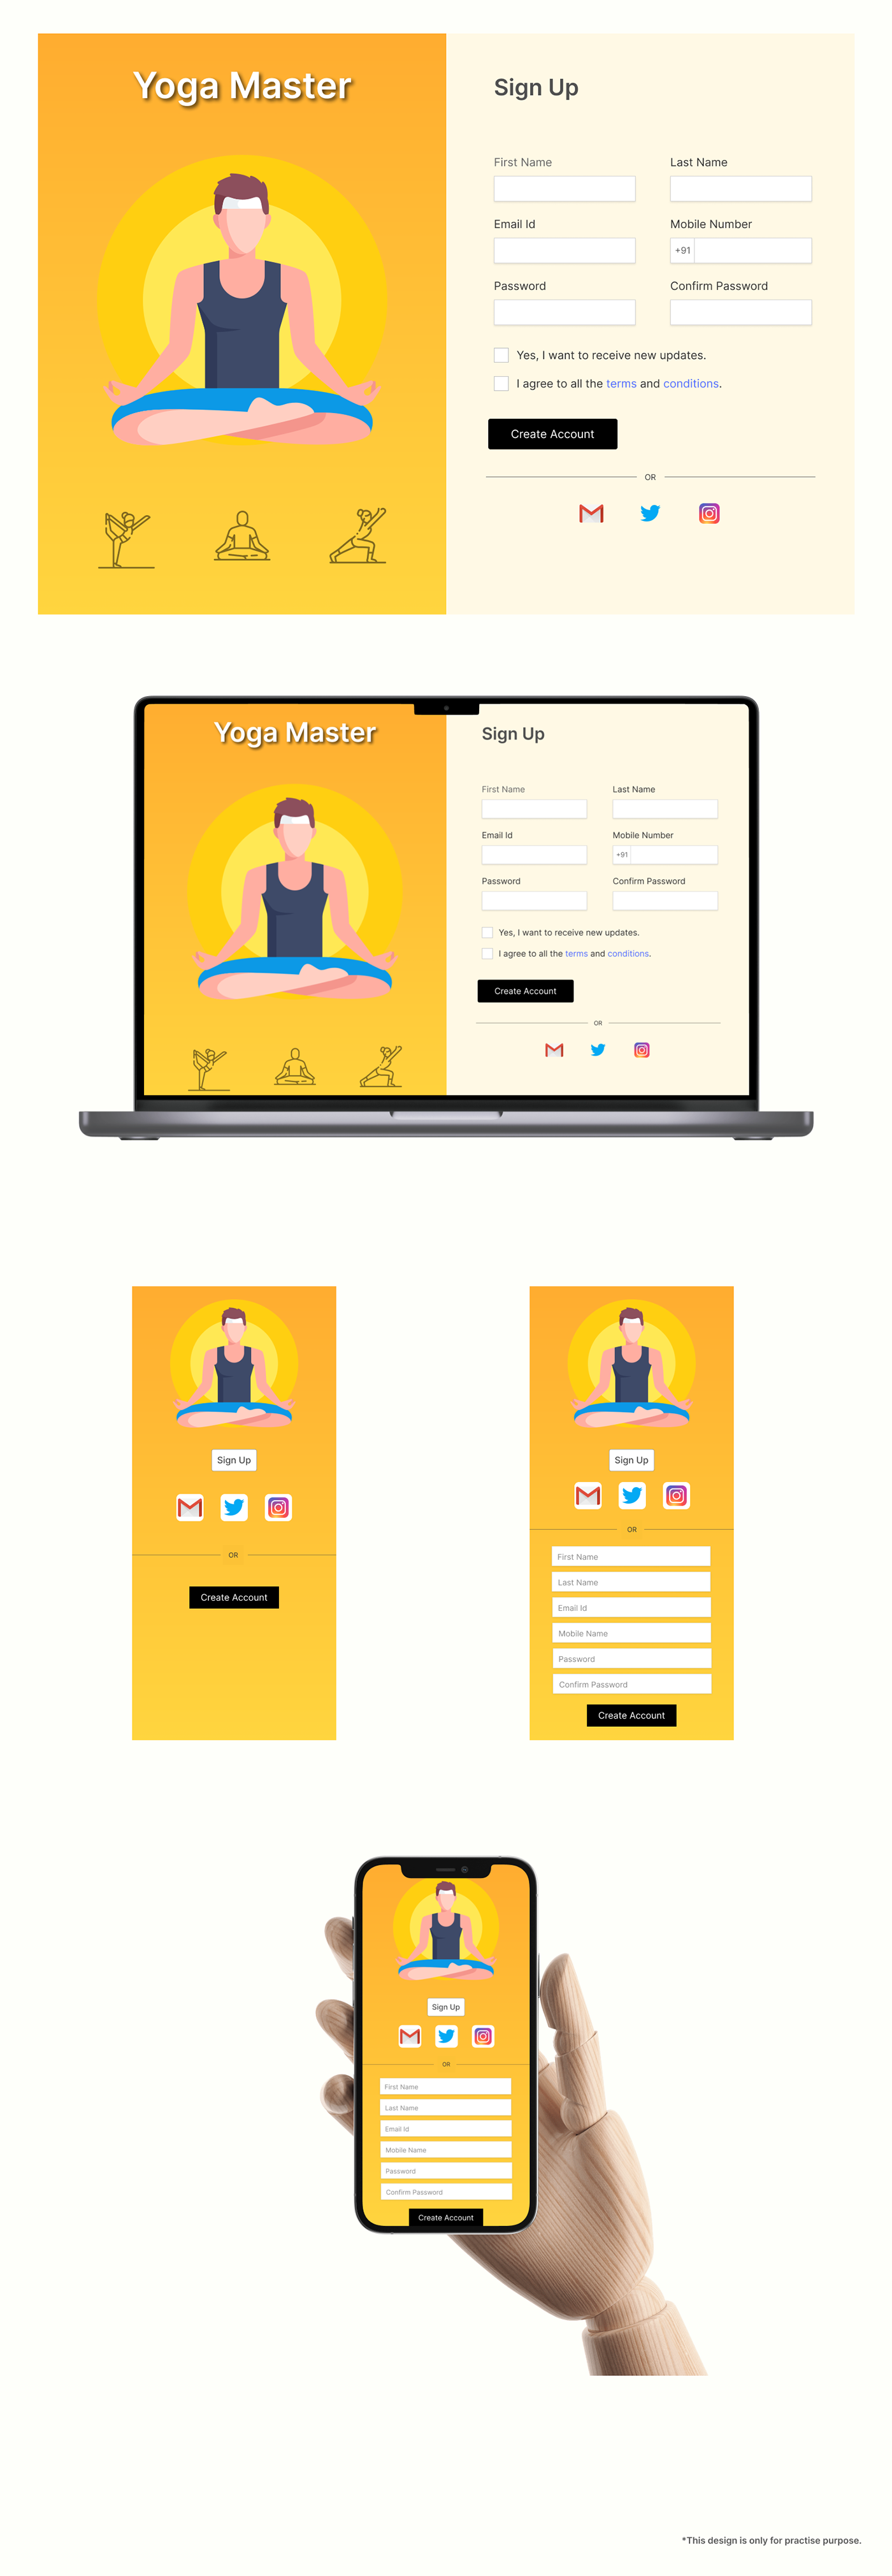 CREATEACCOUNT design Figma signup UI Yoga